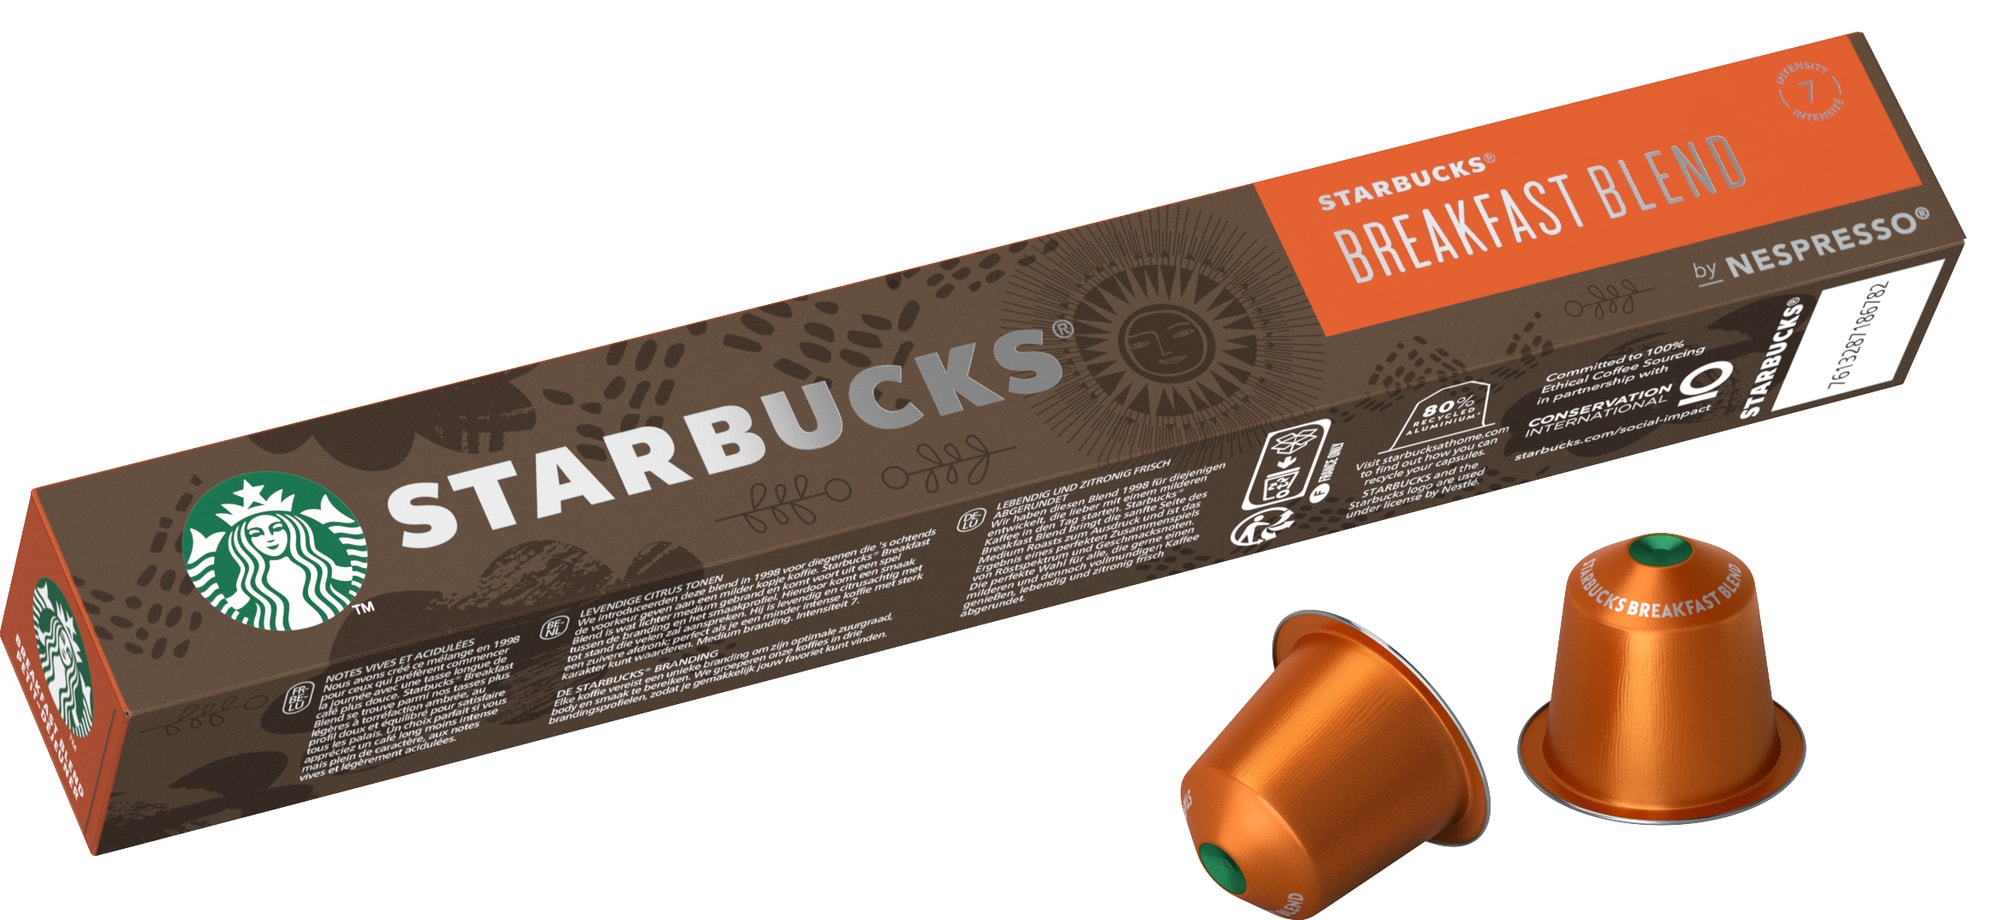 Starbucks by Nespresso Breakfast Blend kaffekapsler 12473157 thumbnail